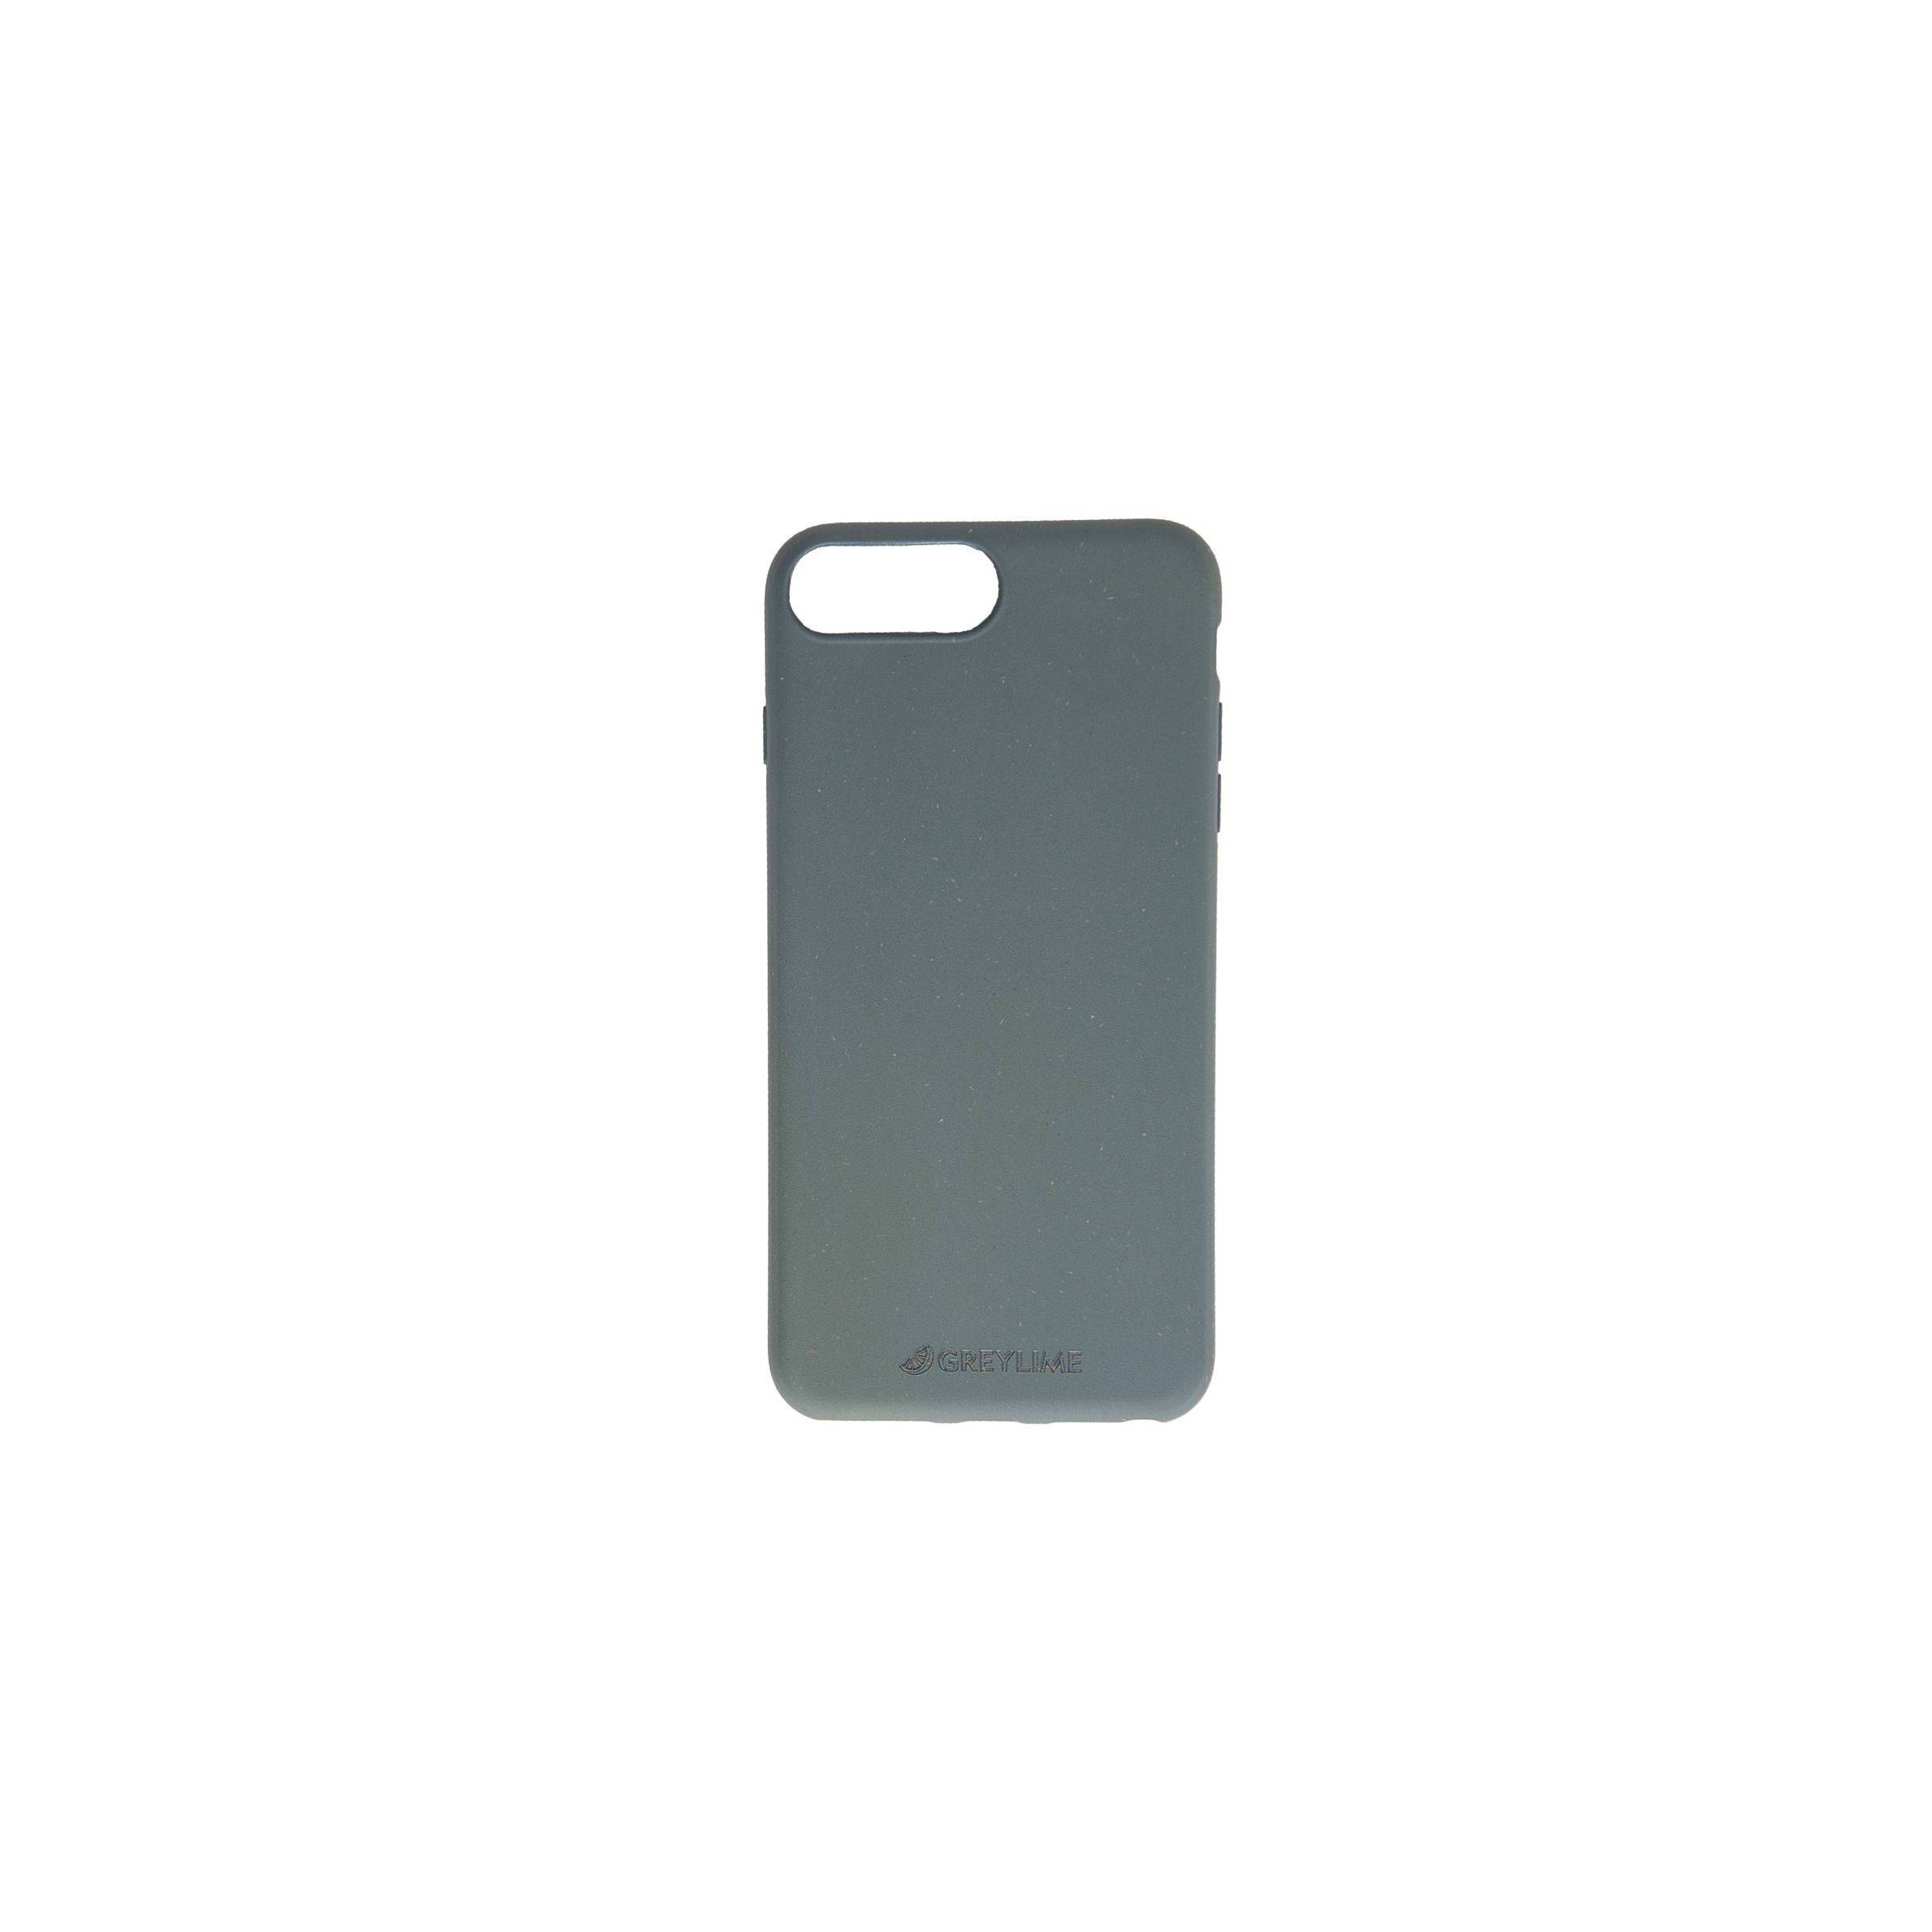 Bilde av Iphone 6/7/8 Plus Biodegradable Cover Greylime